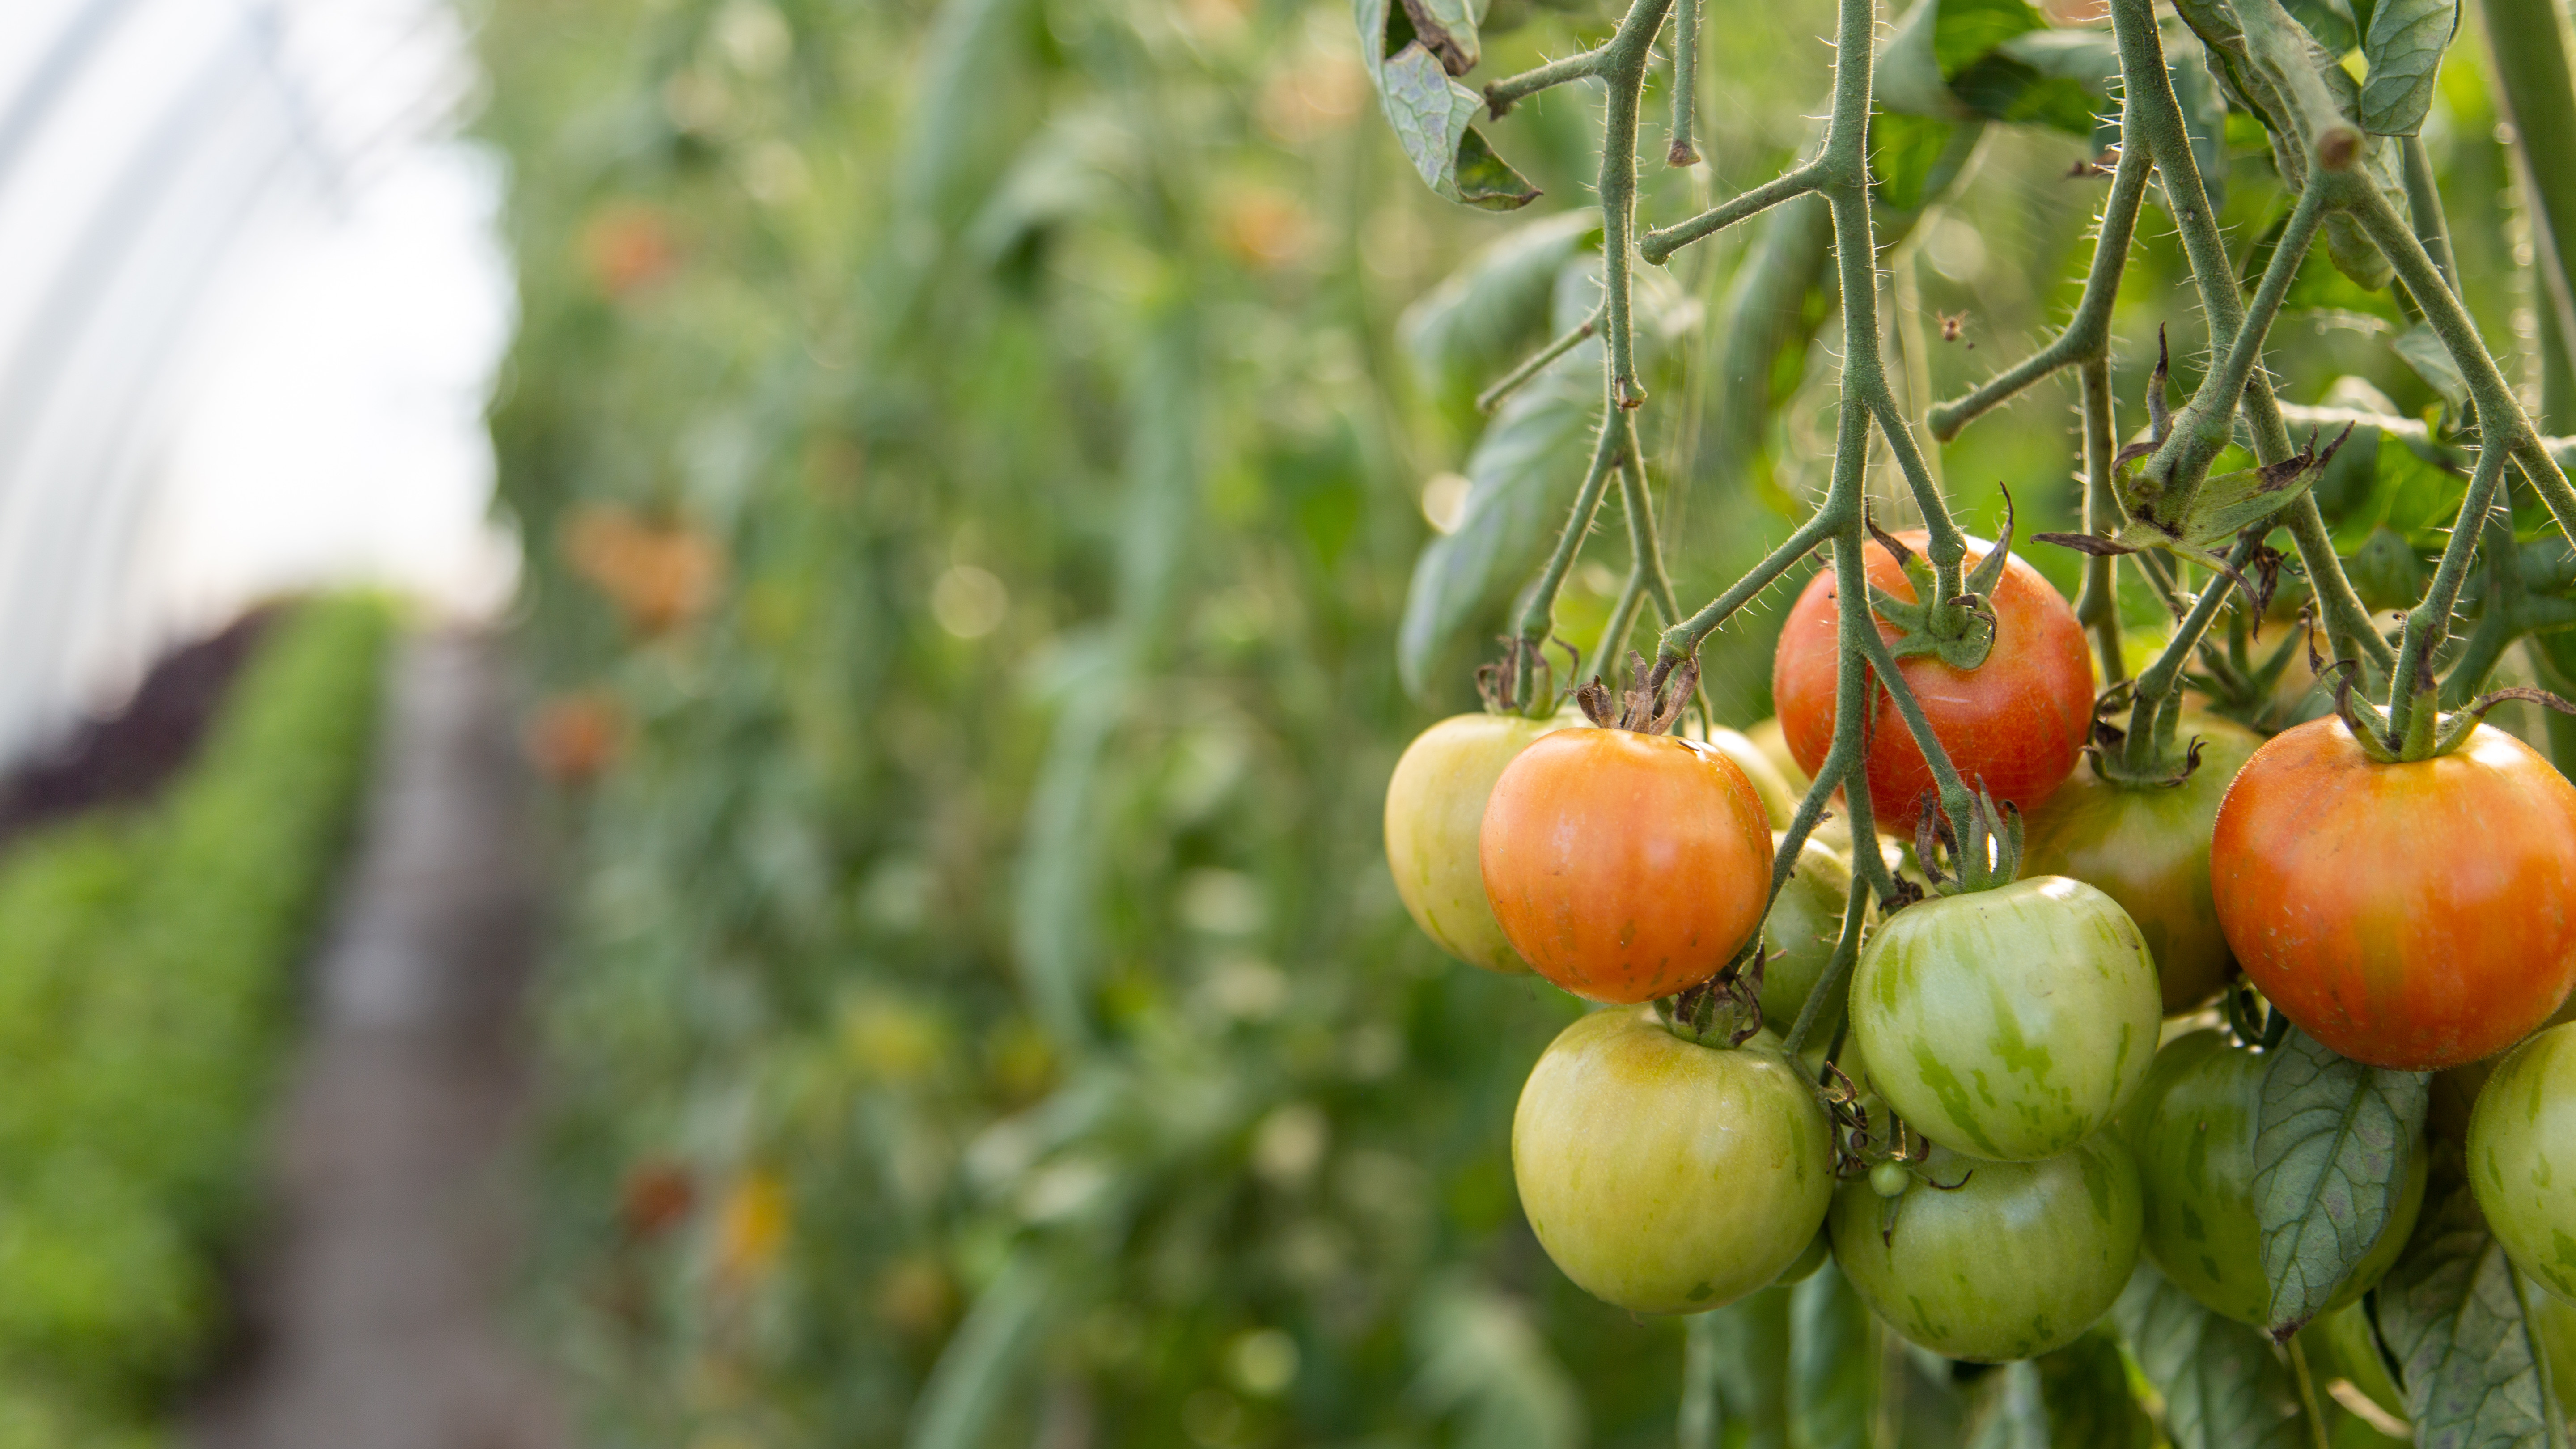 I tunnellerne, som Katrine Bach Hansen kalder de hjemmelavede drivhuse, dyrkes der blandt andet tomater